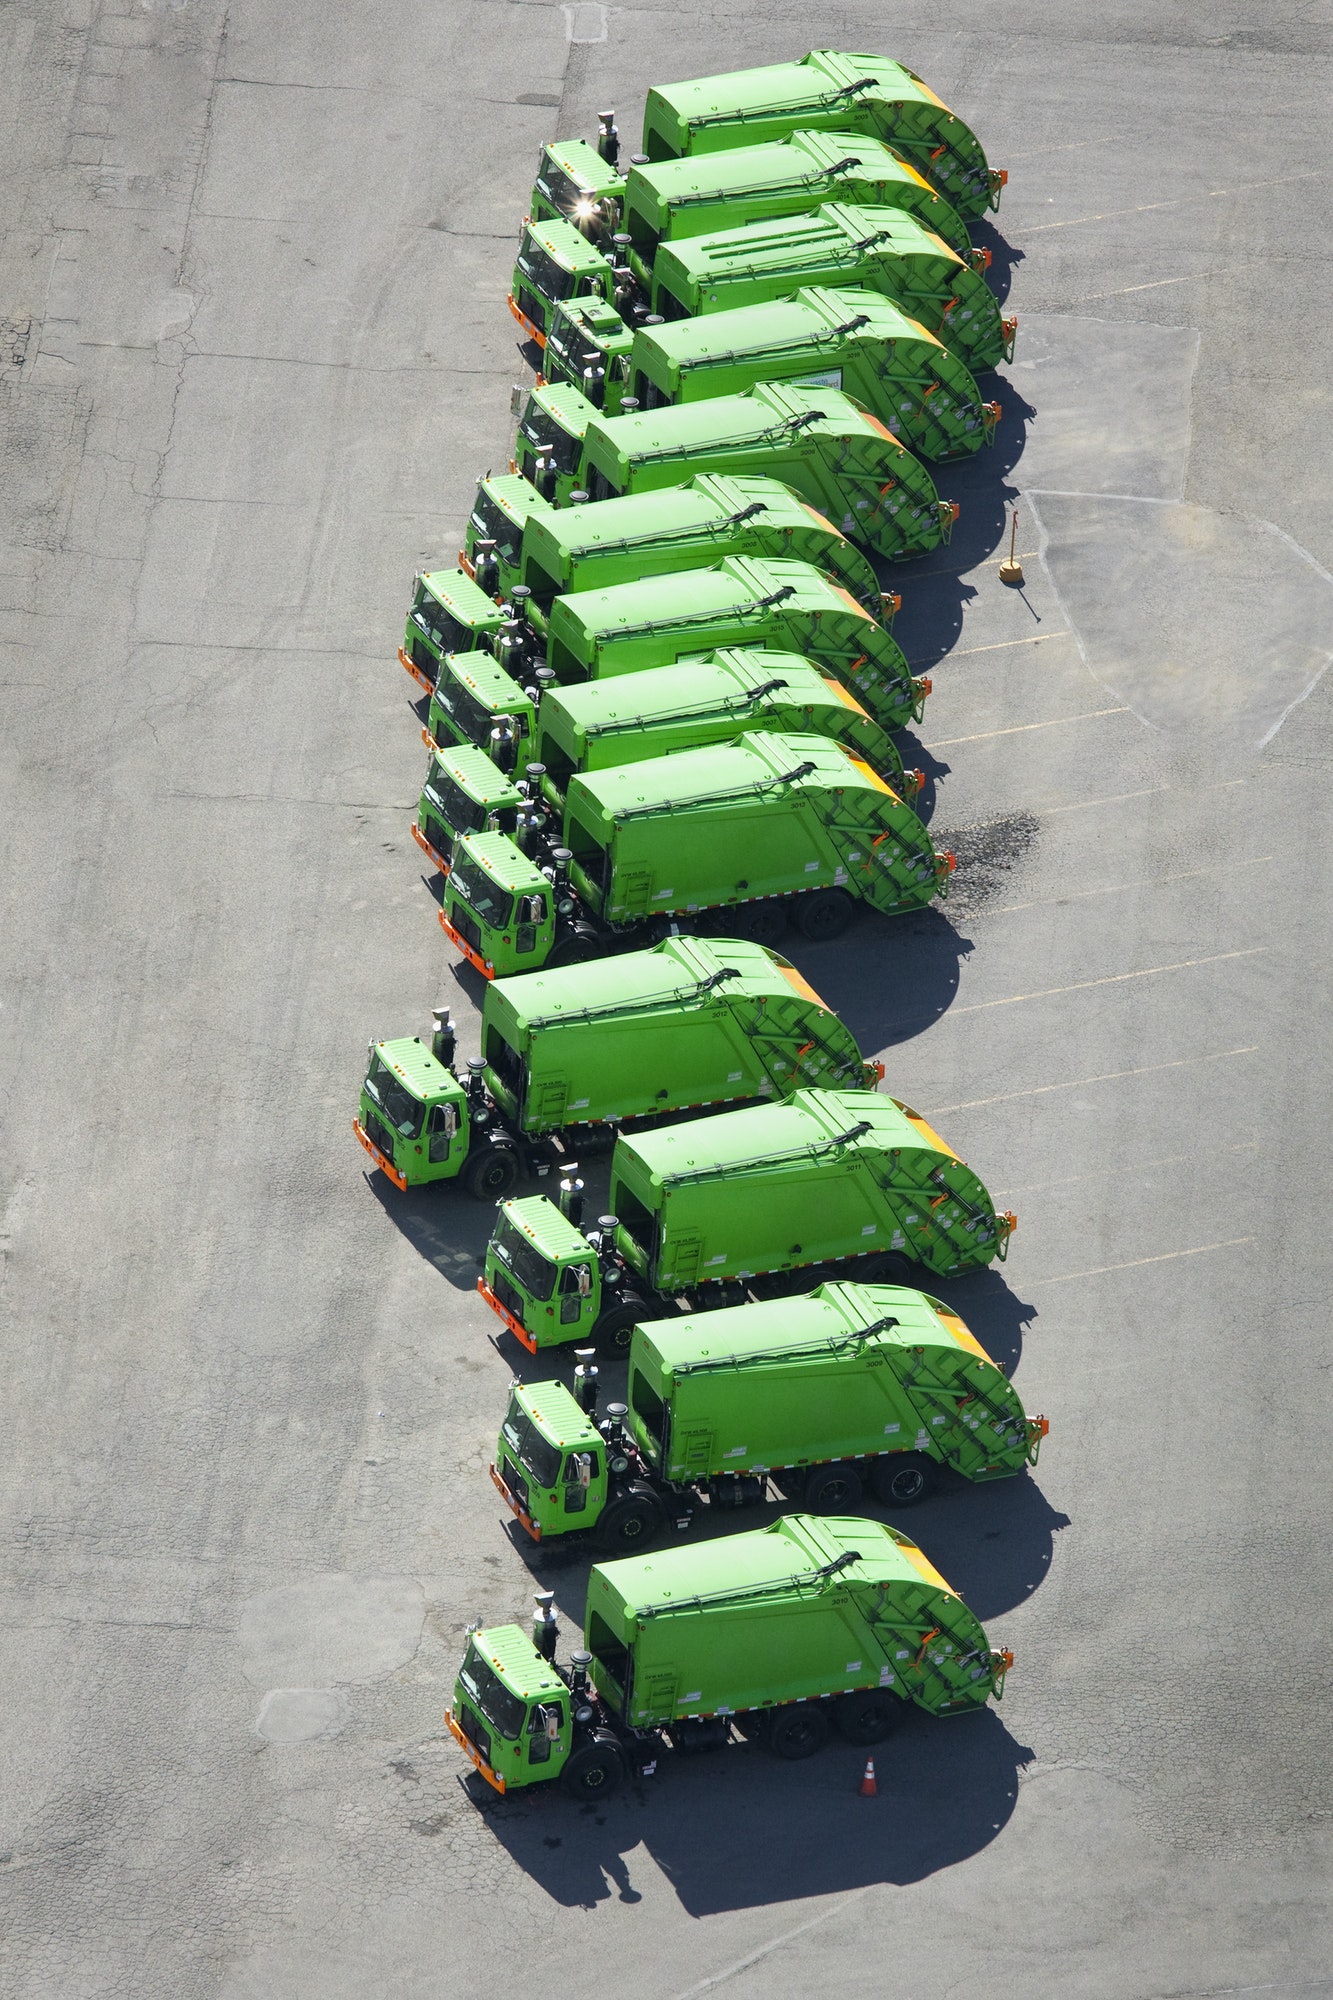 45643,Garbage Truck Fleet